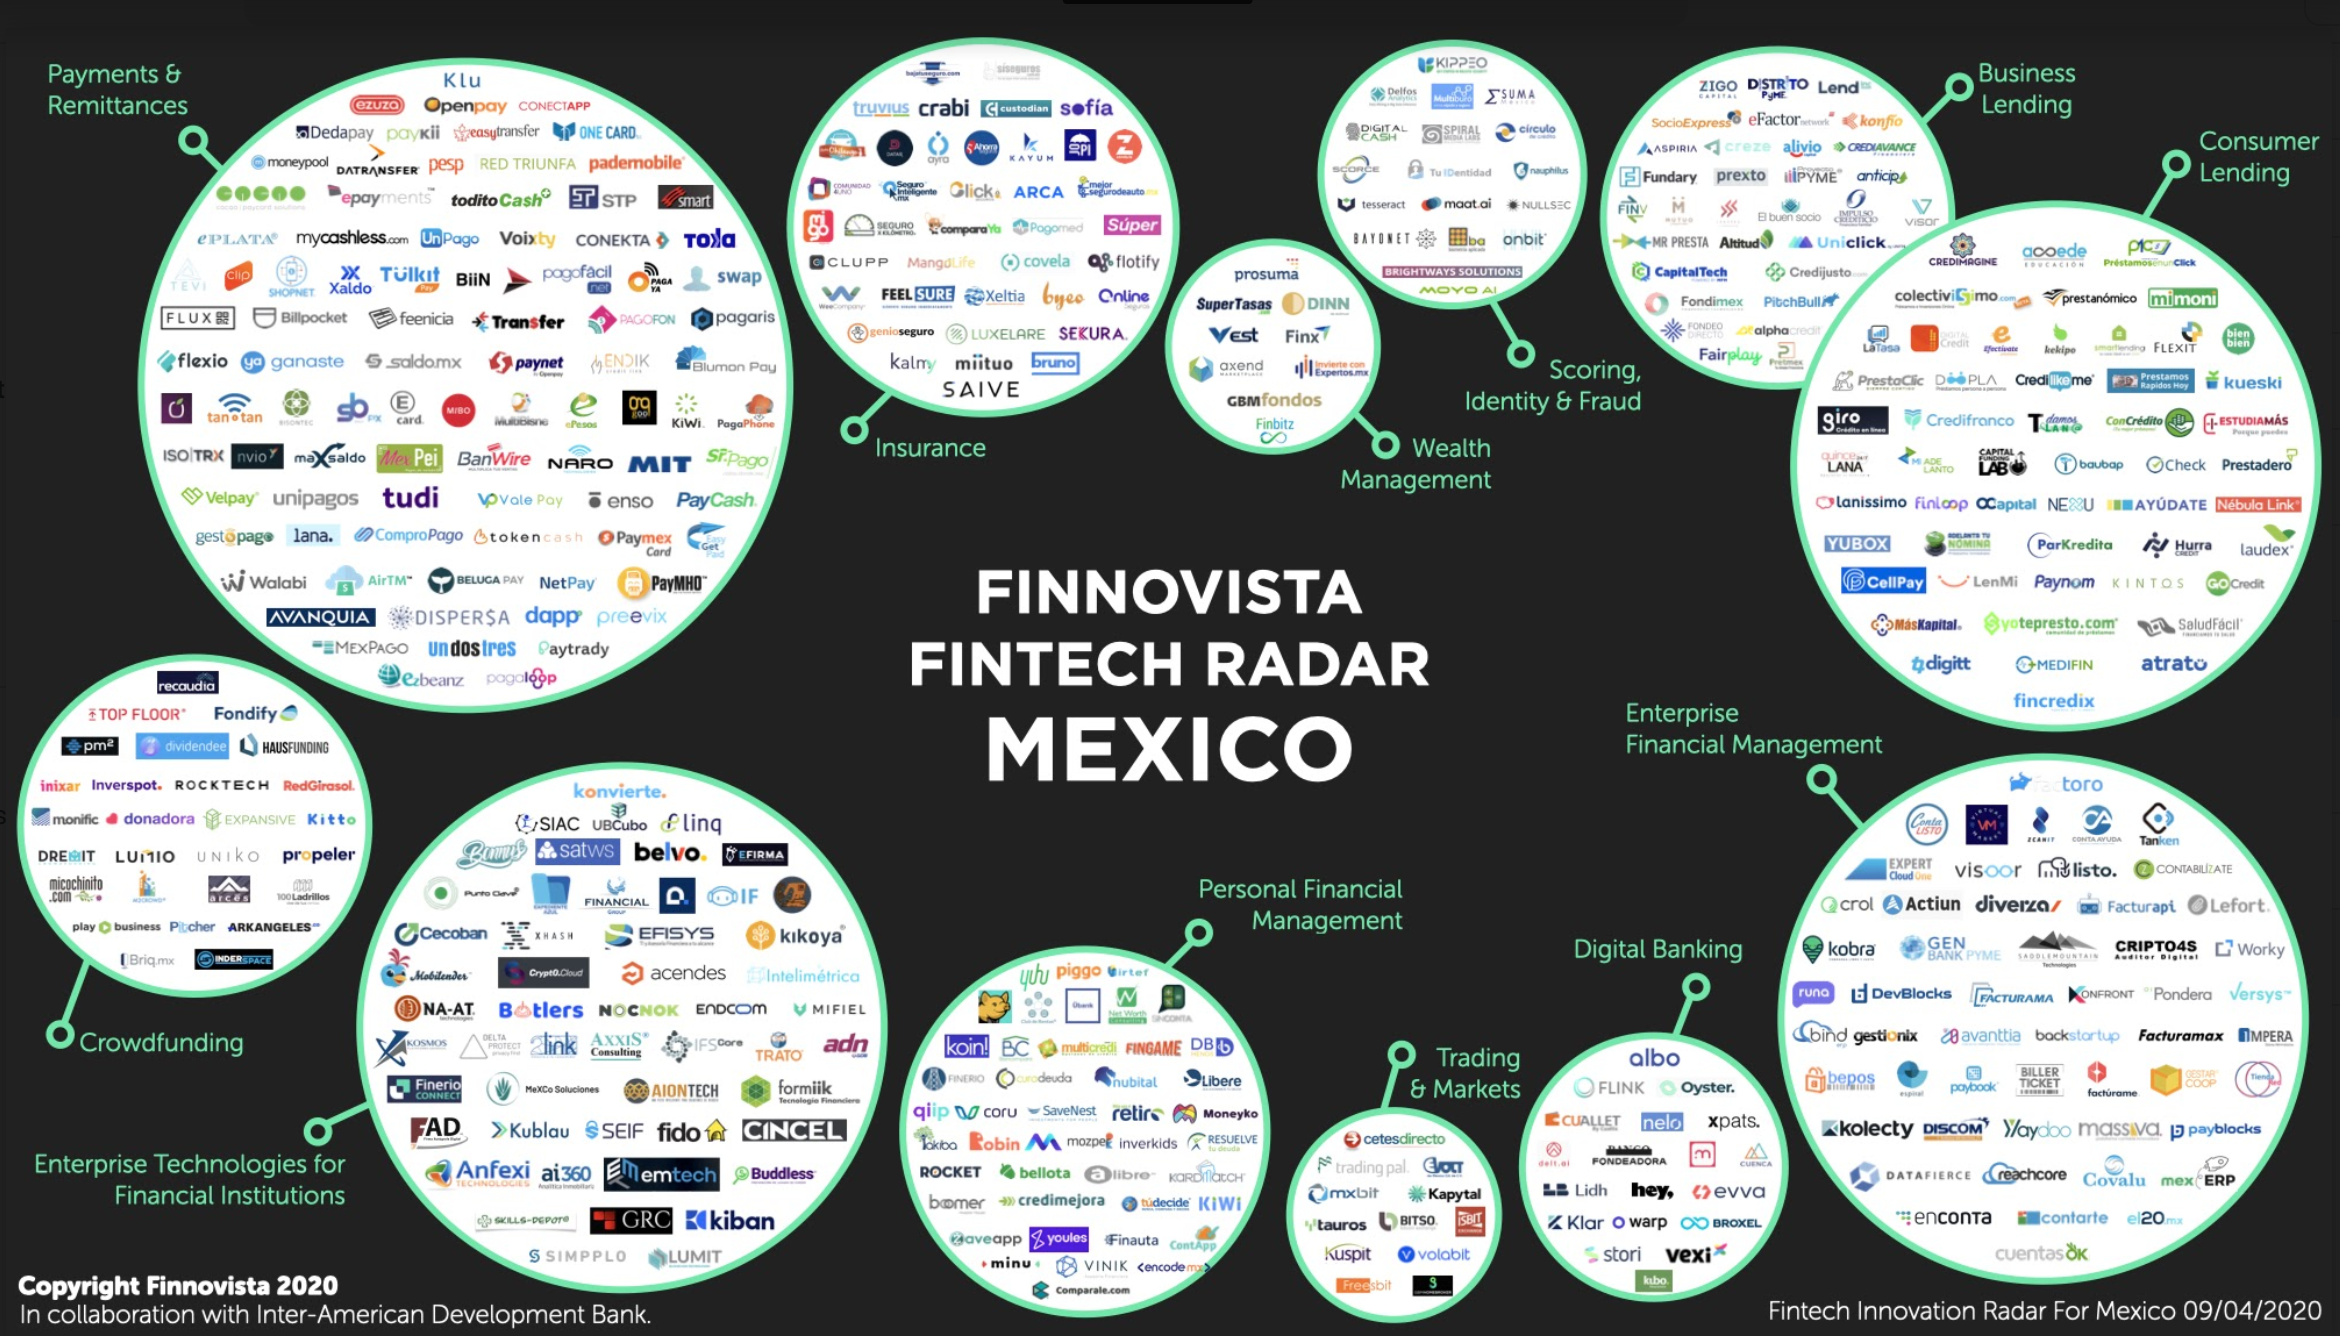 Fintech Radar Mexico 2020